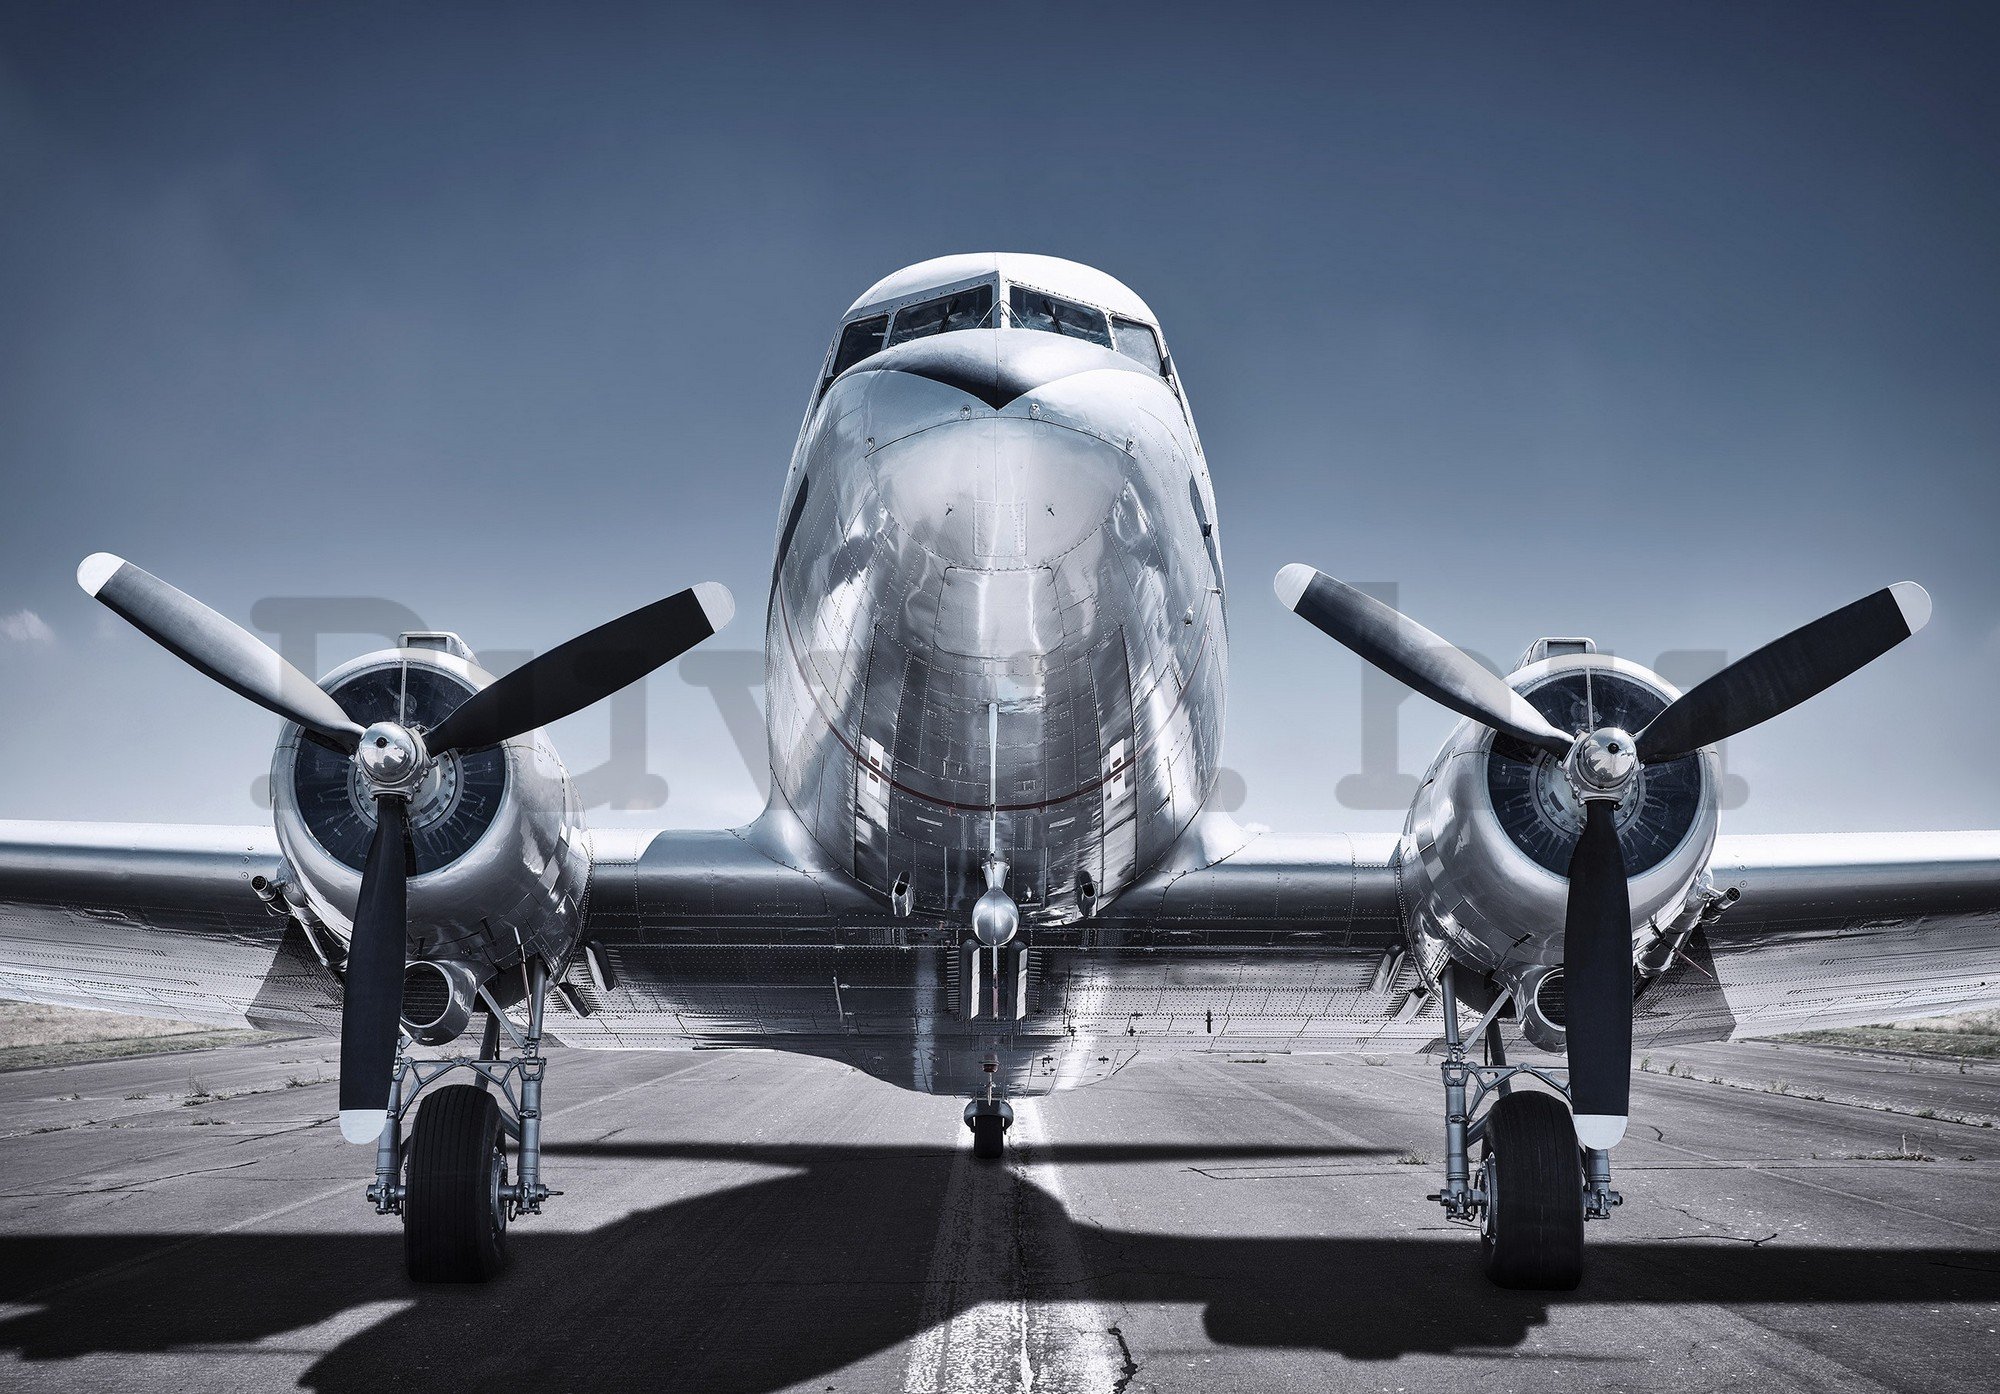 Fotótapéta: Történelmi repülőgép - 368x254cm